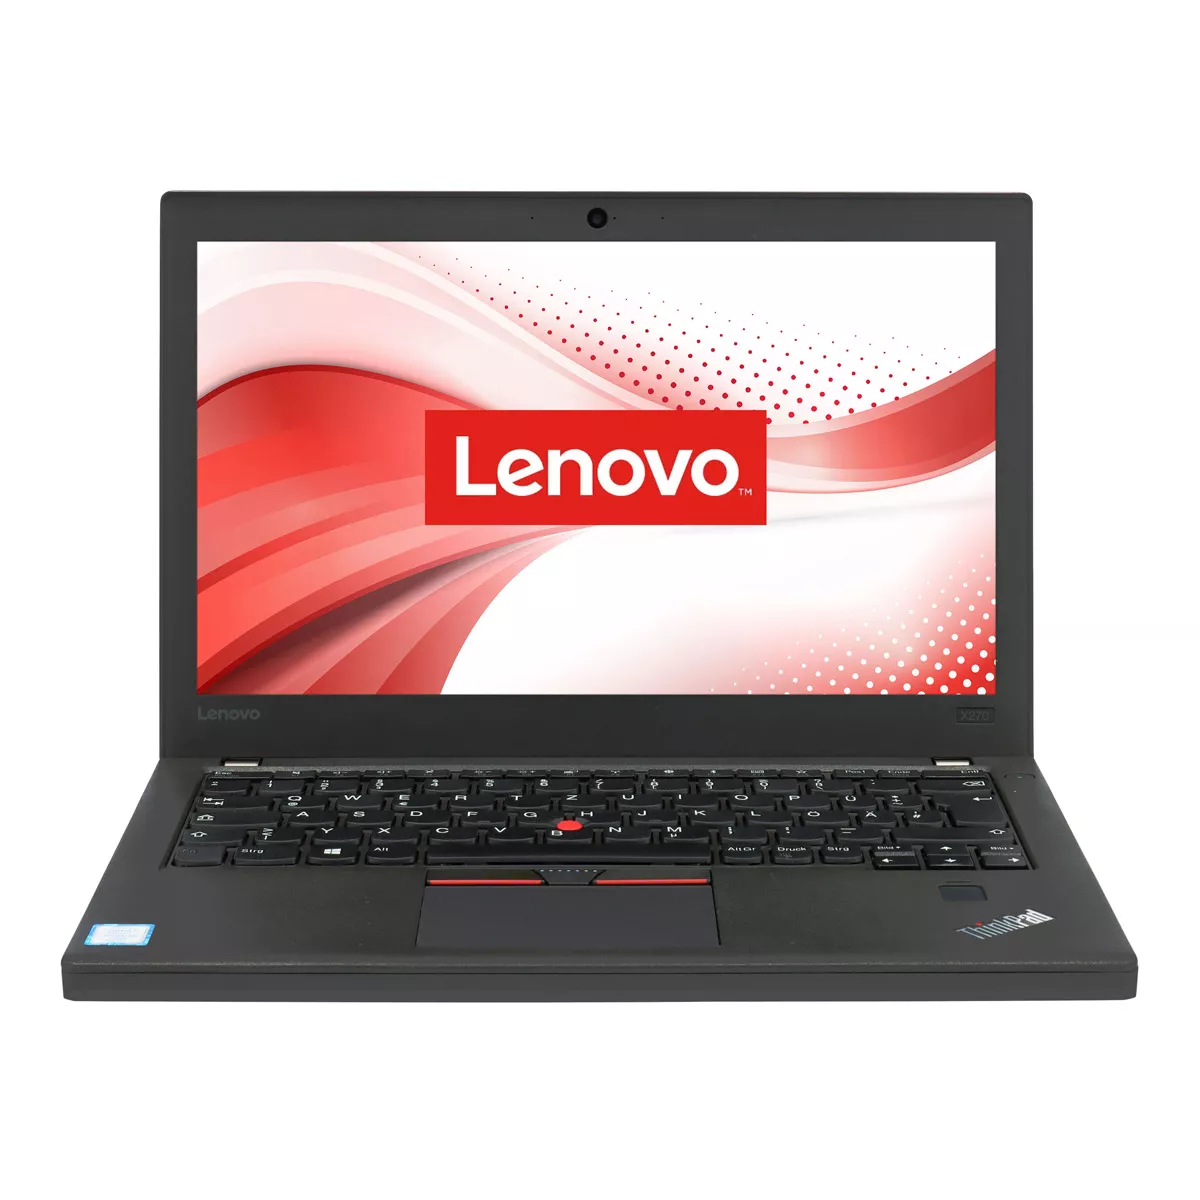 Lenovo ThinkPad X270 Core i5 6300U 240 GB M.2 SSD Webcam A+